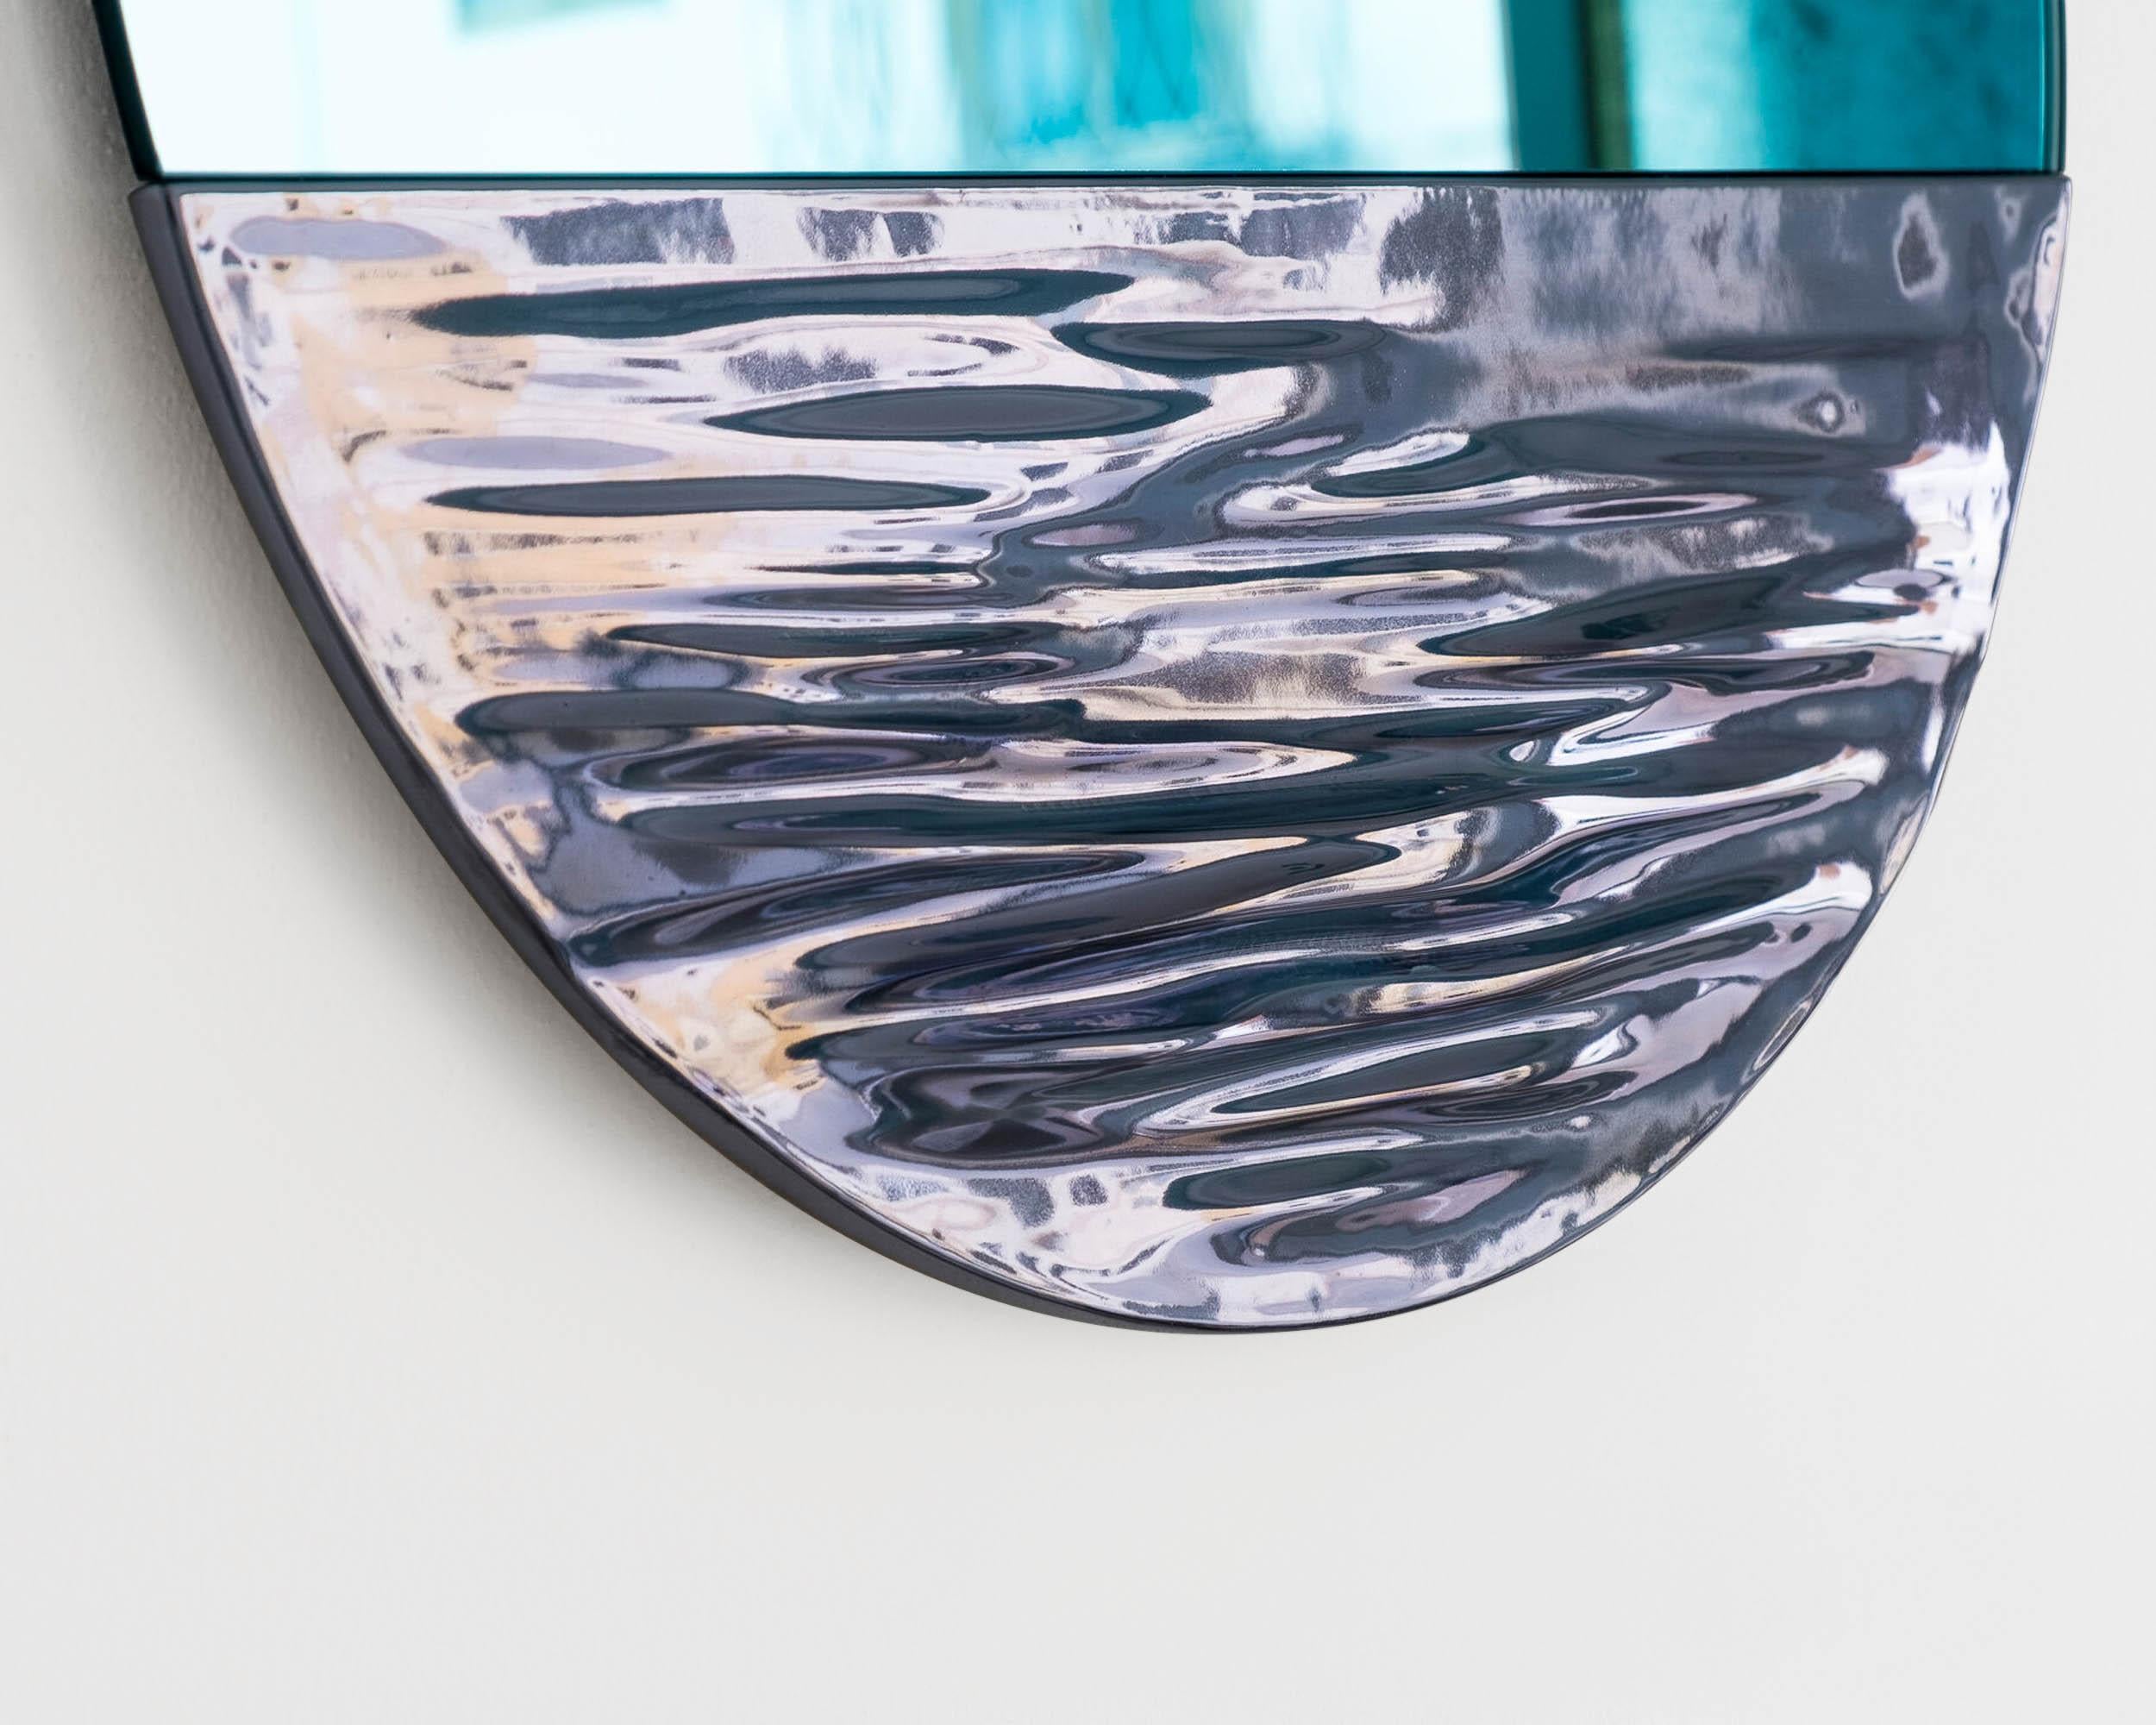 Orizon bleu vif
Miroir rond signé par Ocrùm 

Dimensions : 21.75 x 1.75 in
Matériaux : Céramique émaillée décorée à la main, miroir en verre
Couleurs : Bleu vif avec miroir bleu clair
Personnalisation : La teinte du verre, la finition du cadre